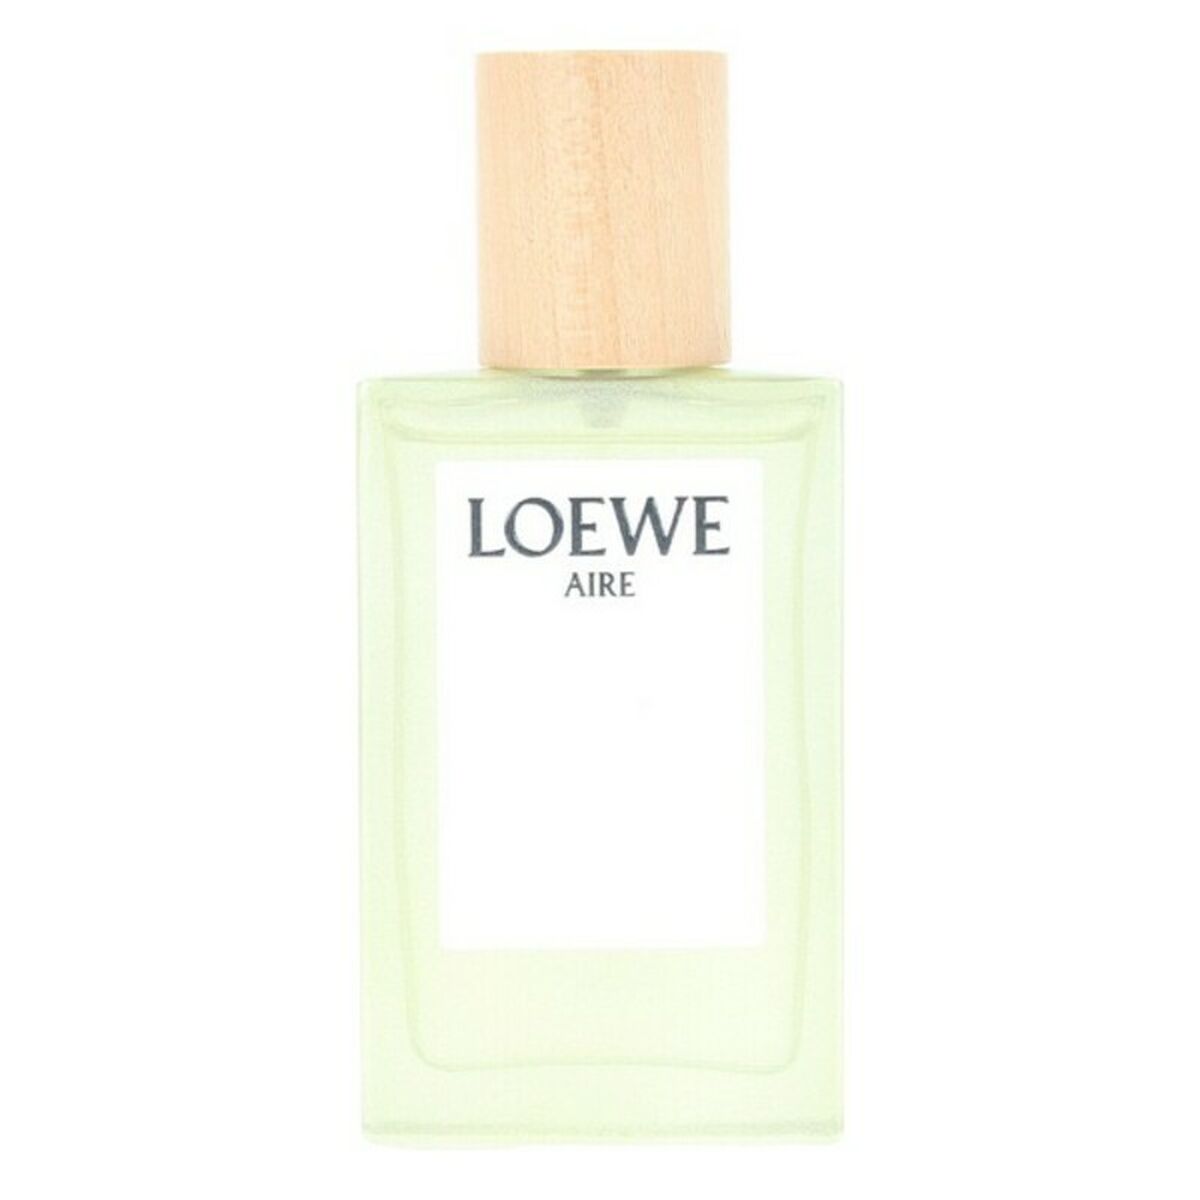 Perfume de femmes Loewe EDT